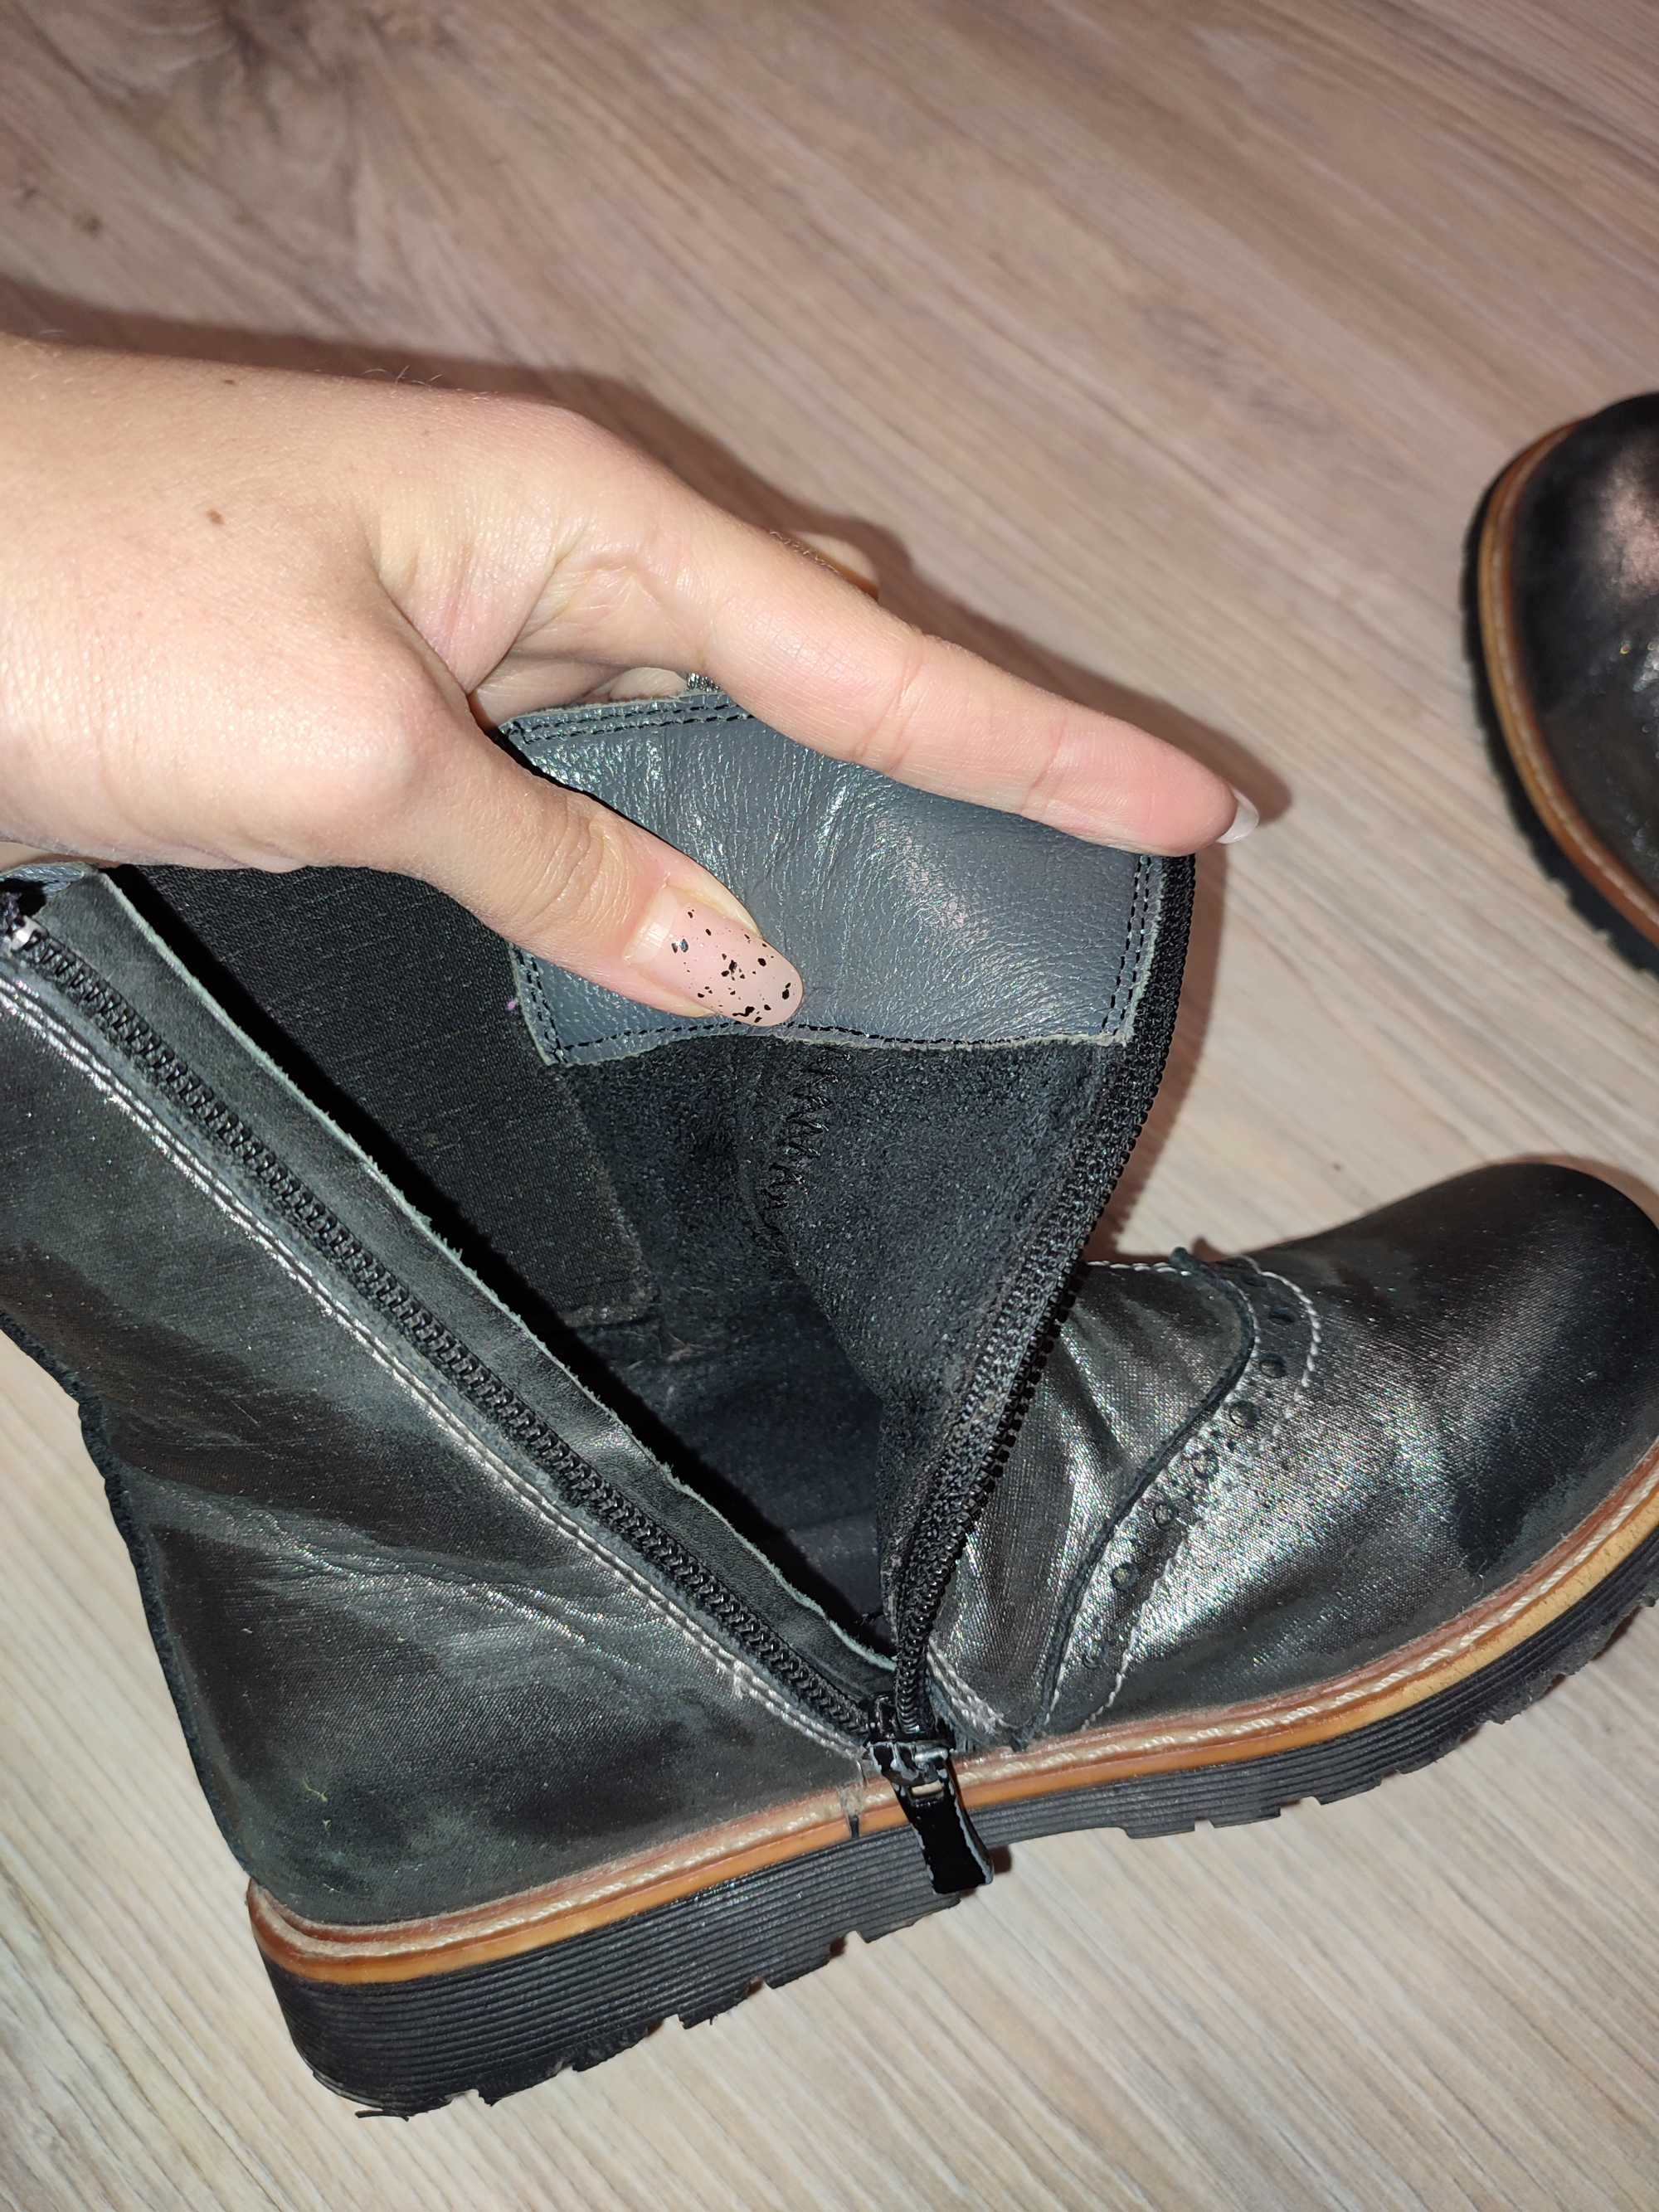 Полусапожки ботинки кожаные Woopy orthopedic деми